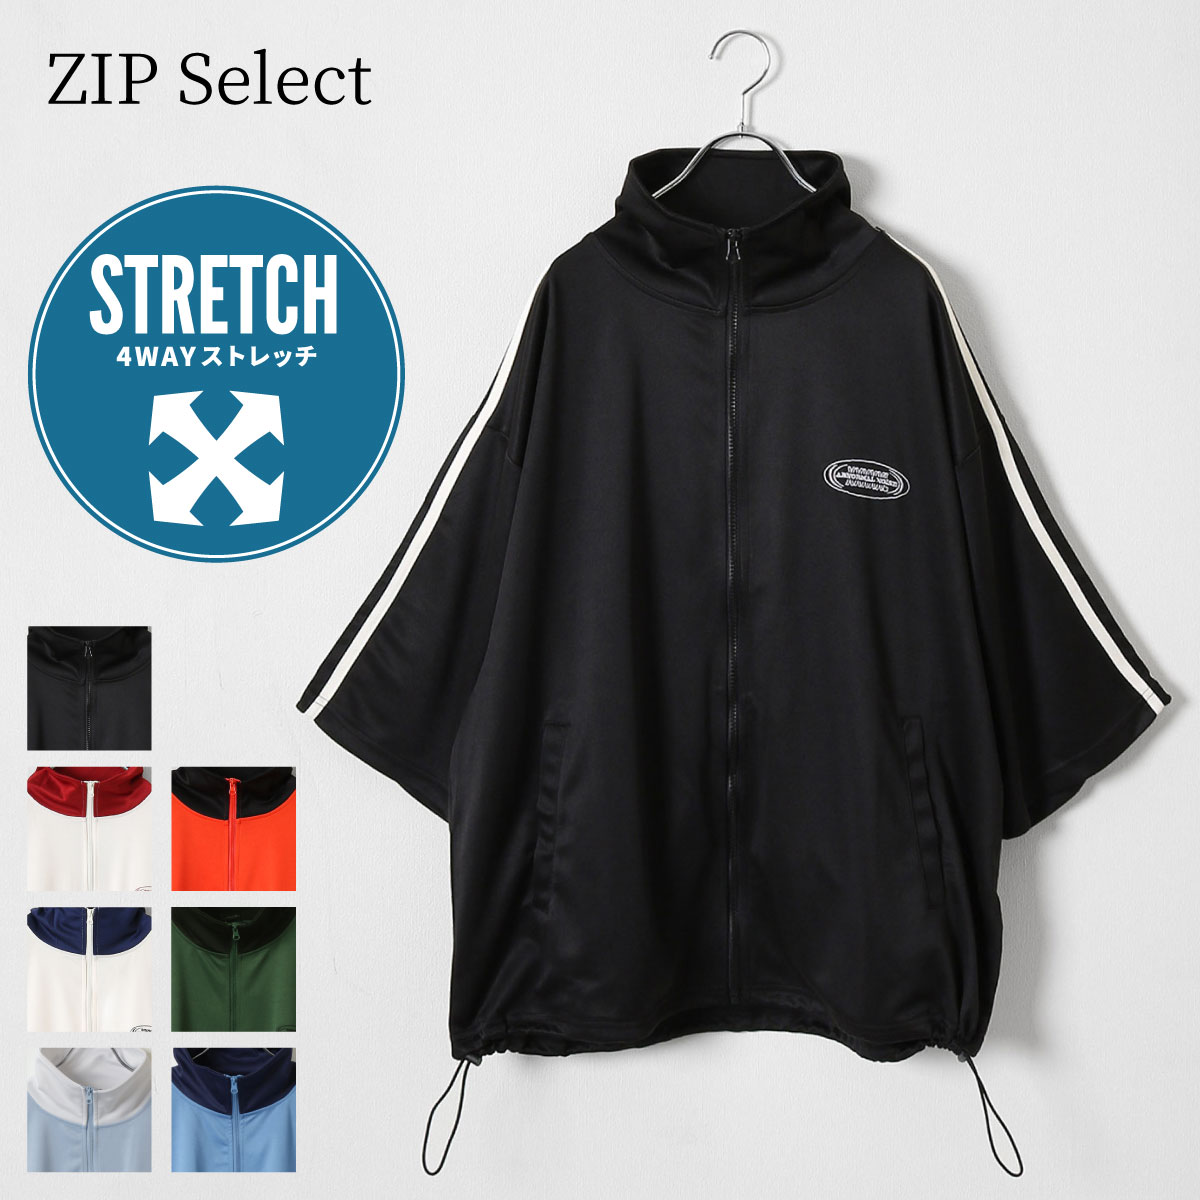 トラックジャケット メンズ ジャージ ジャージ上 半袖 オーバーサイズ ビッグシルエット ロゴ ワンポイント ZIP ジップ 夏 夏物 夏服(33700703)